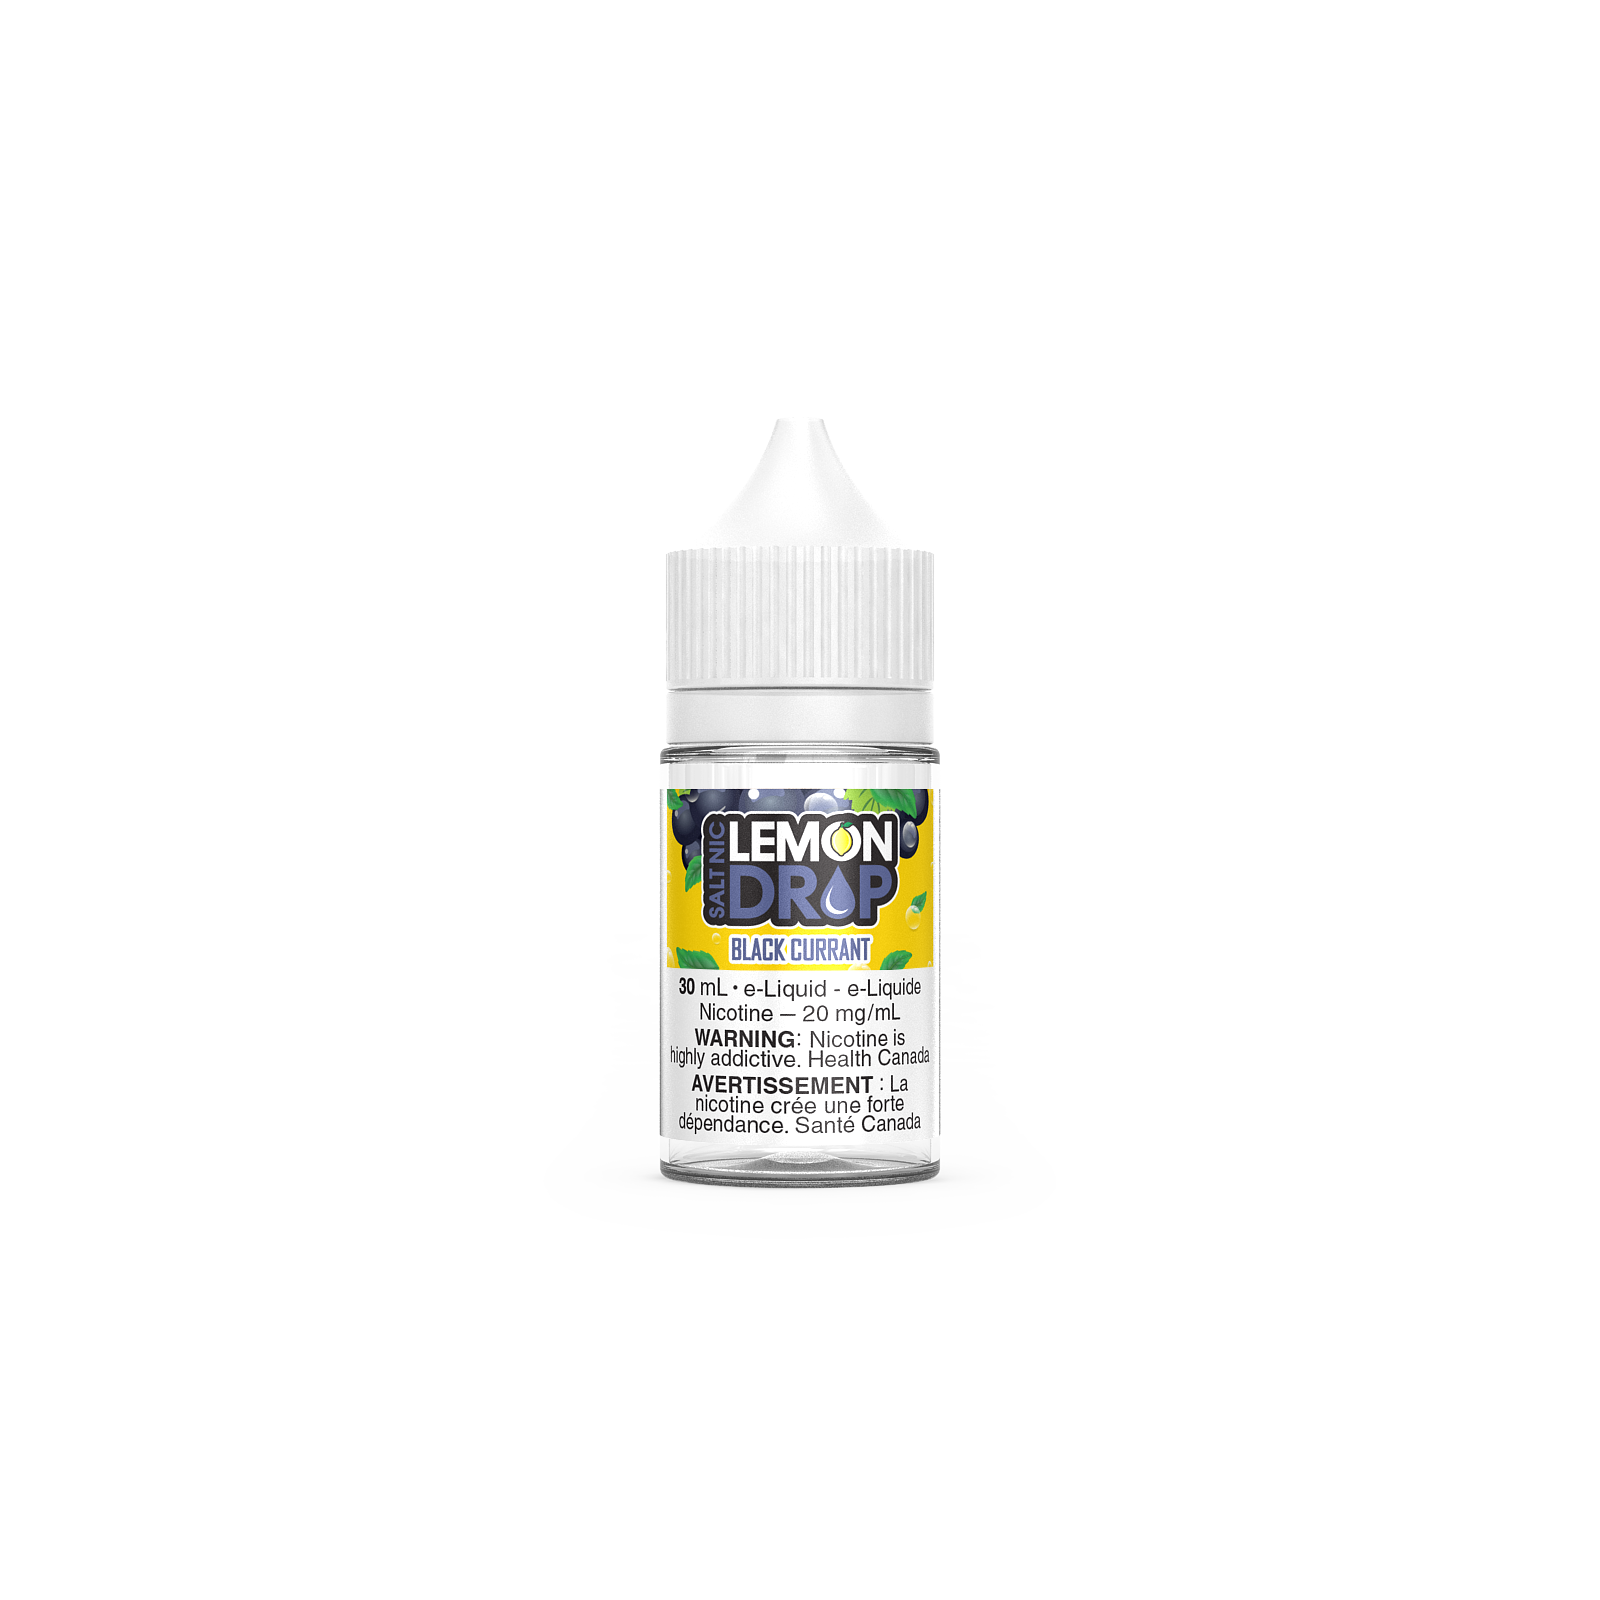 Lemon Drop - SALT - Black Currant - E-Liquid